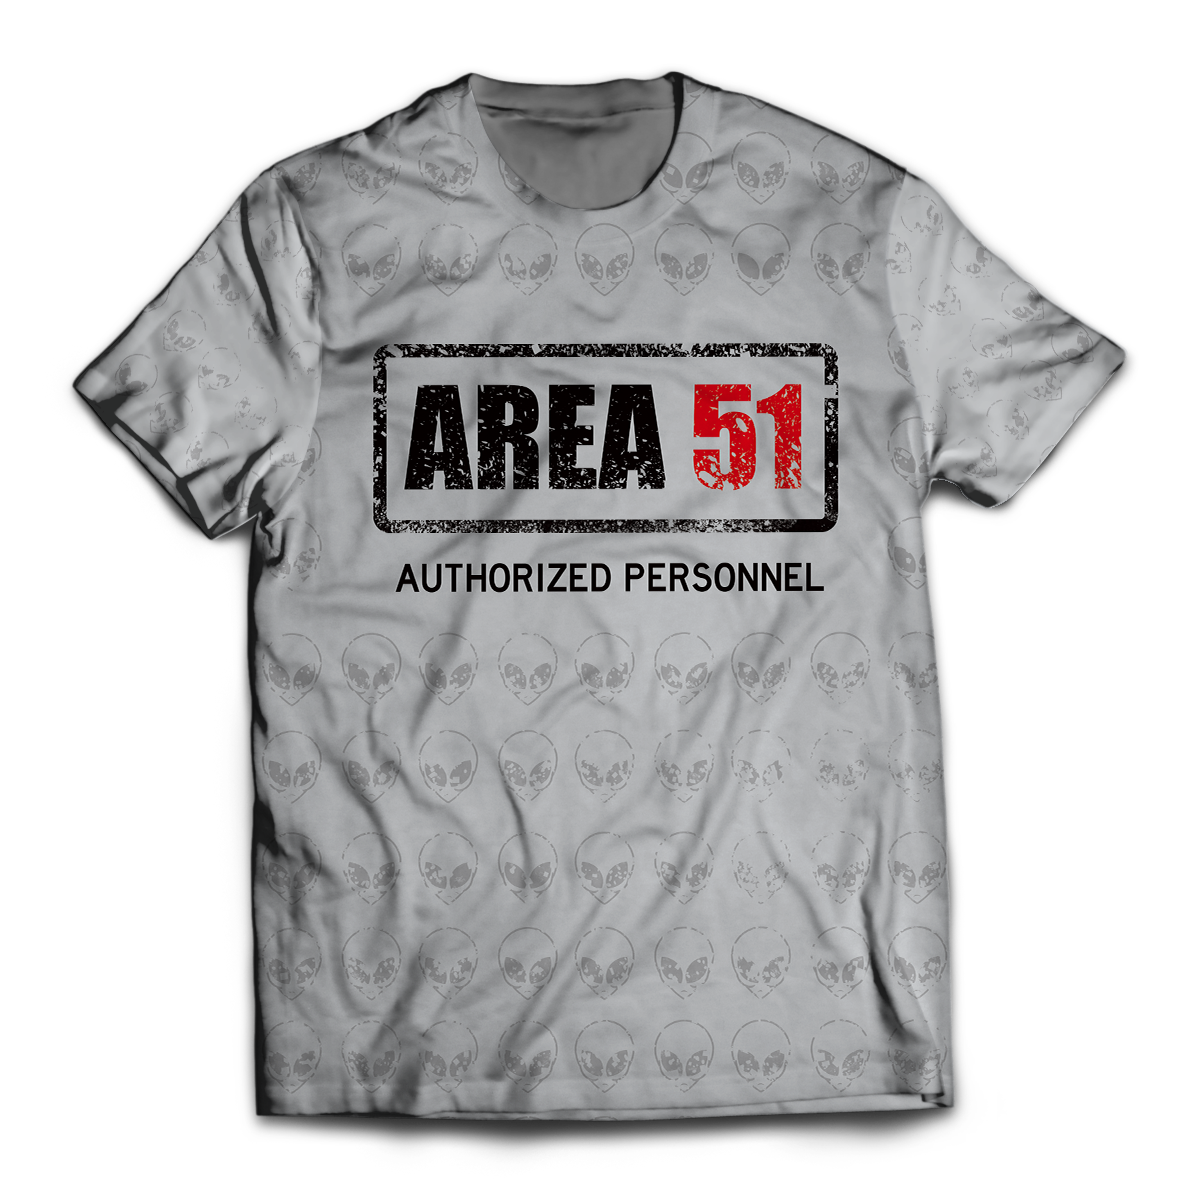 Area 51 Authorized Personnel Unisex T-Shirt